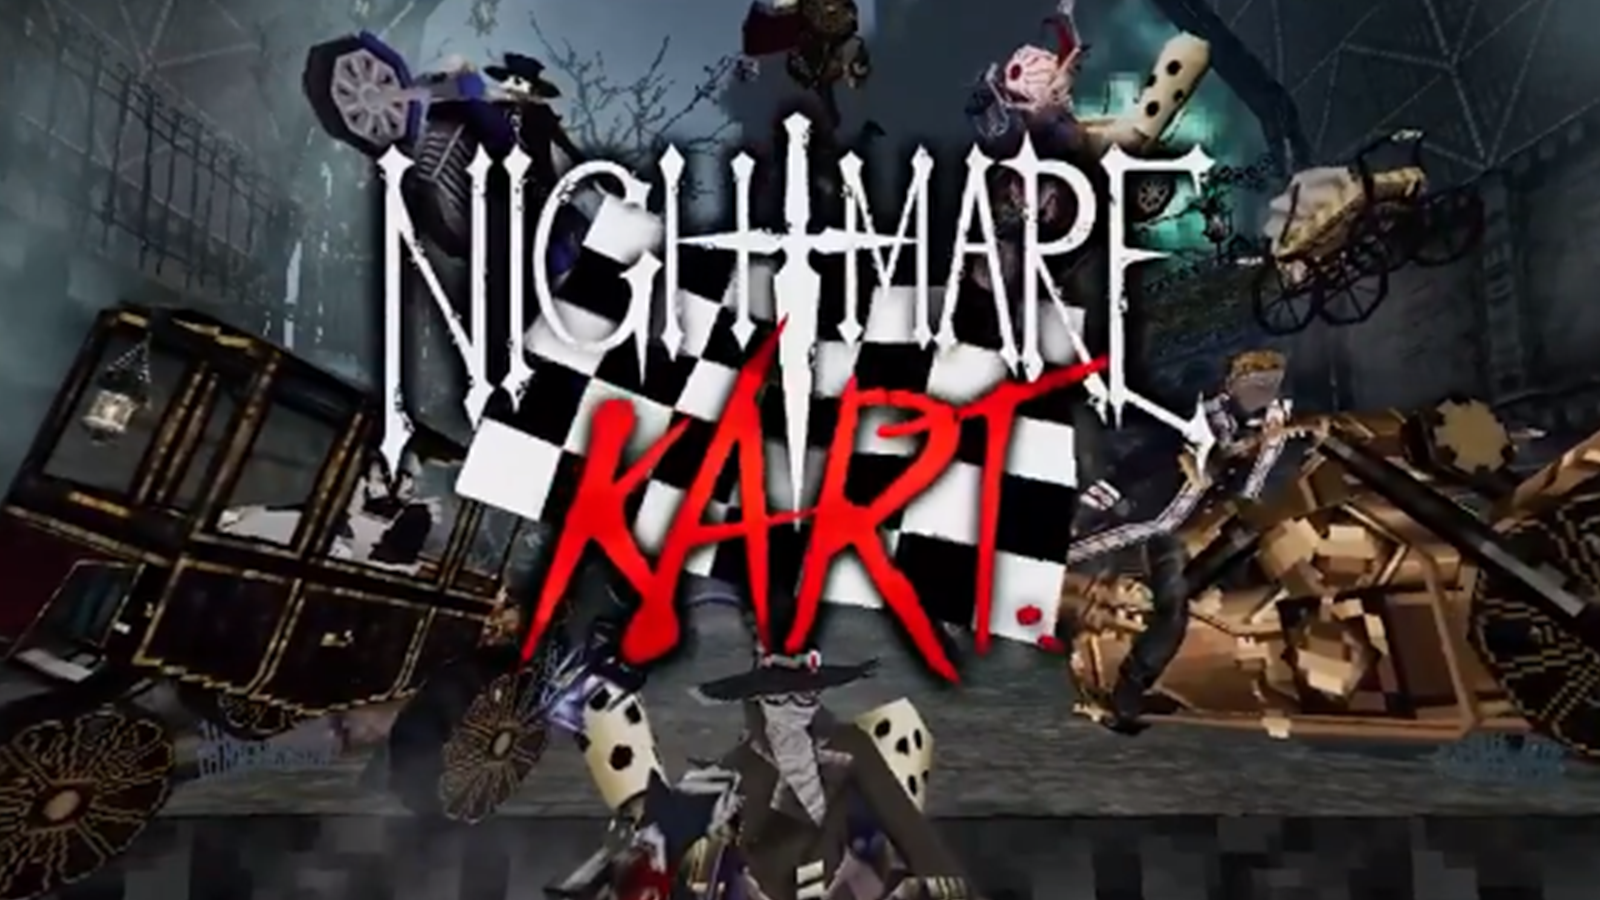 Nightmare Kart's title screen